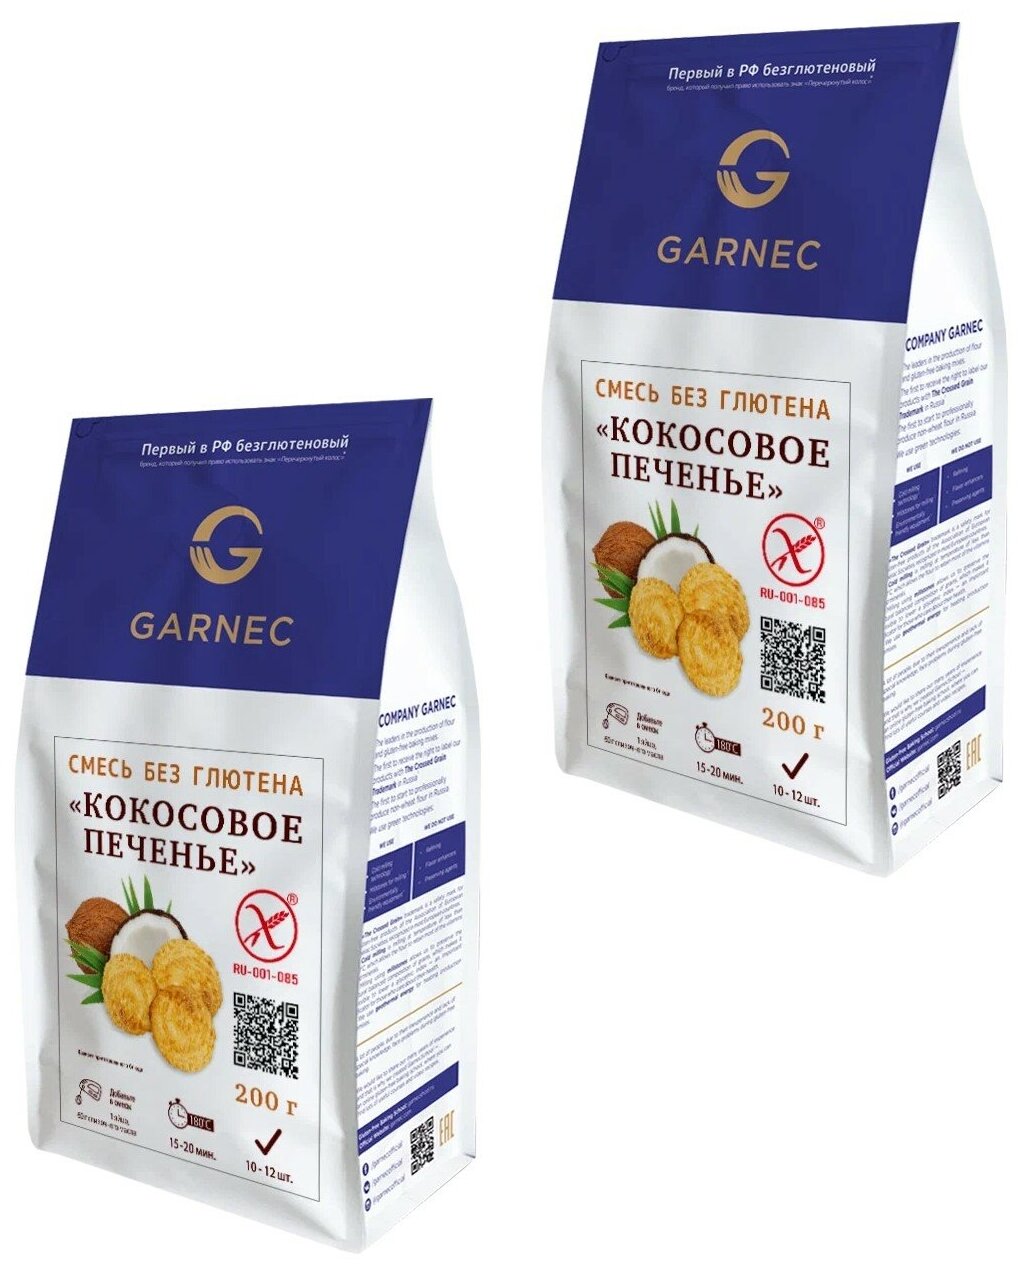 GARNEC Смесь для выпечки "Кокосовое печенье" без глютена 200 г. , 2 упаковки.